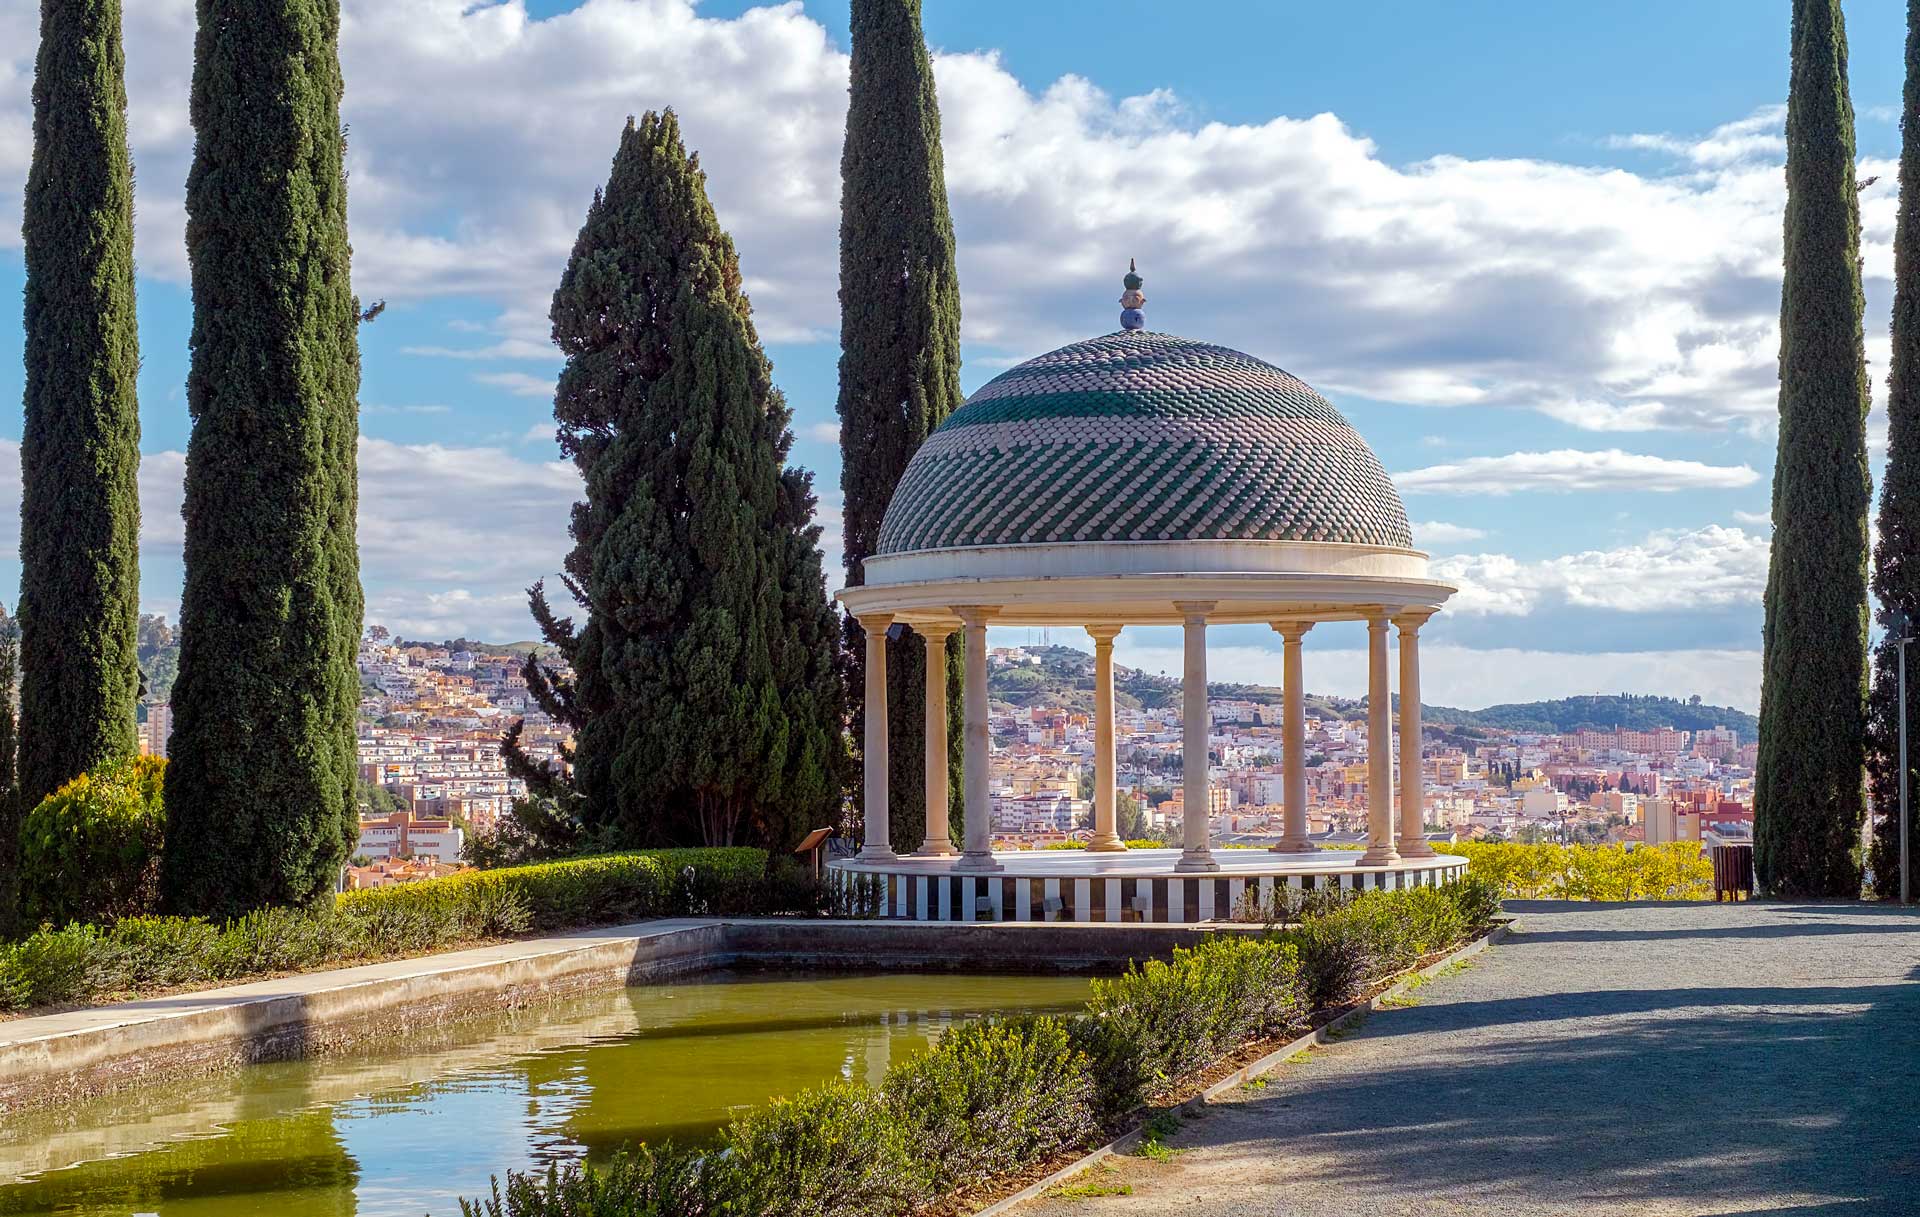 La Concepcion Garden in Malaga